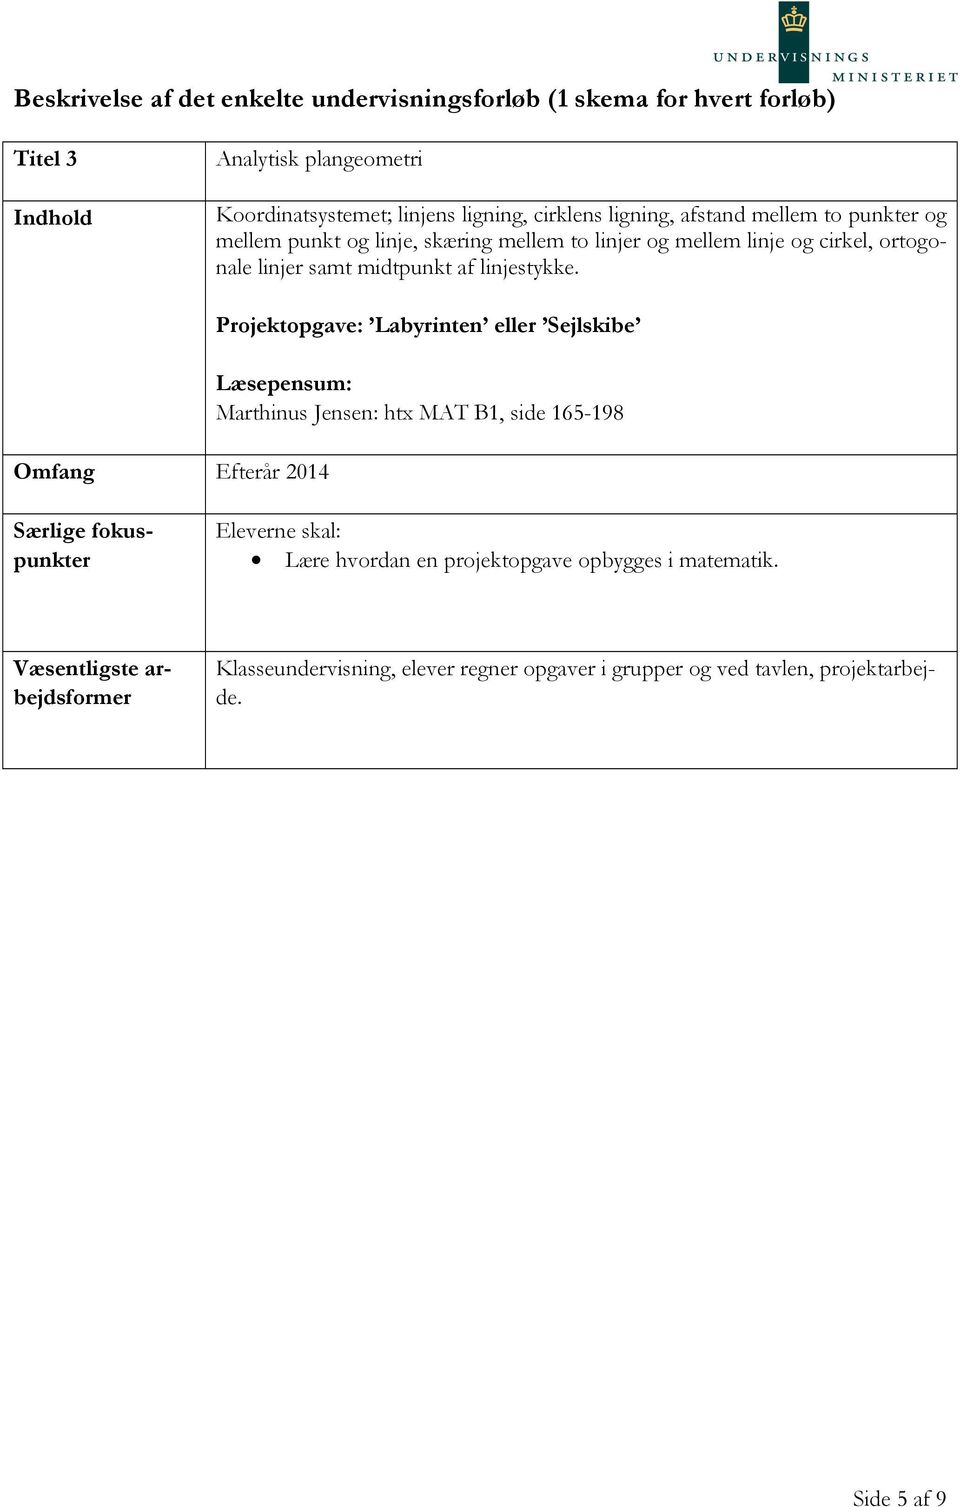 Omfang Efterår 2014 Projektopgave: Labyrinten eller Sejlskibe Marthinus Jensen: htx MAT B1, side 165-198 Lære hvordan en